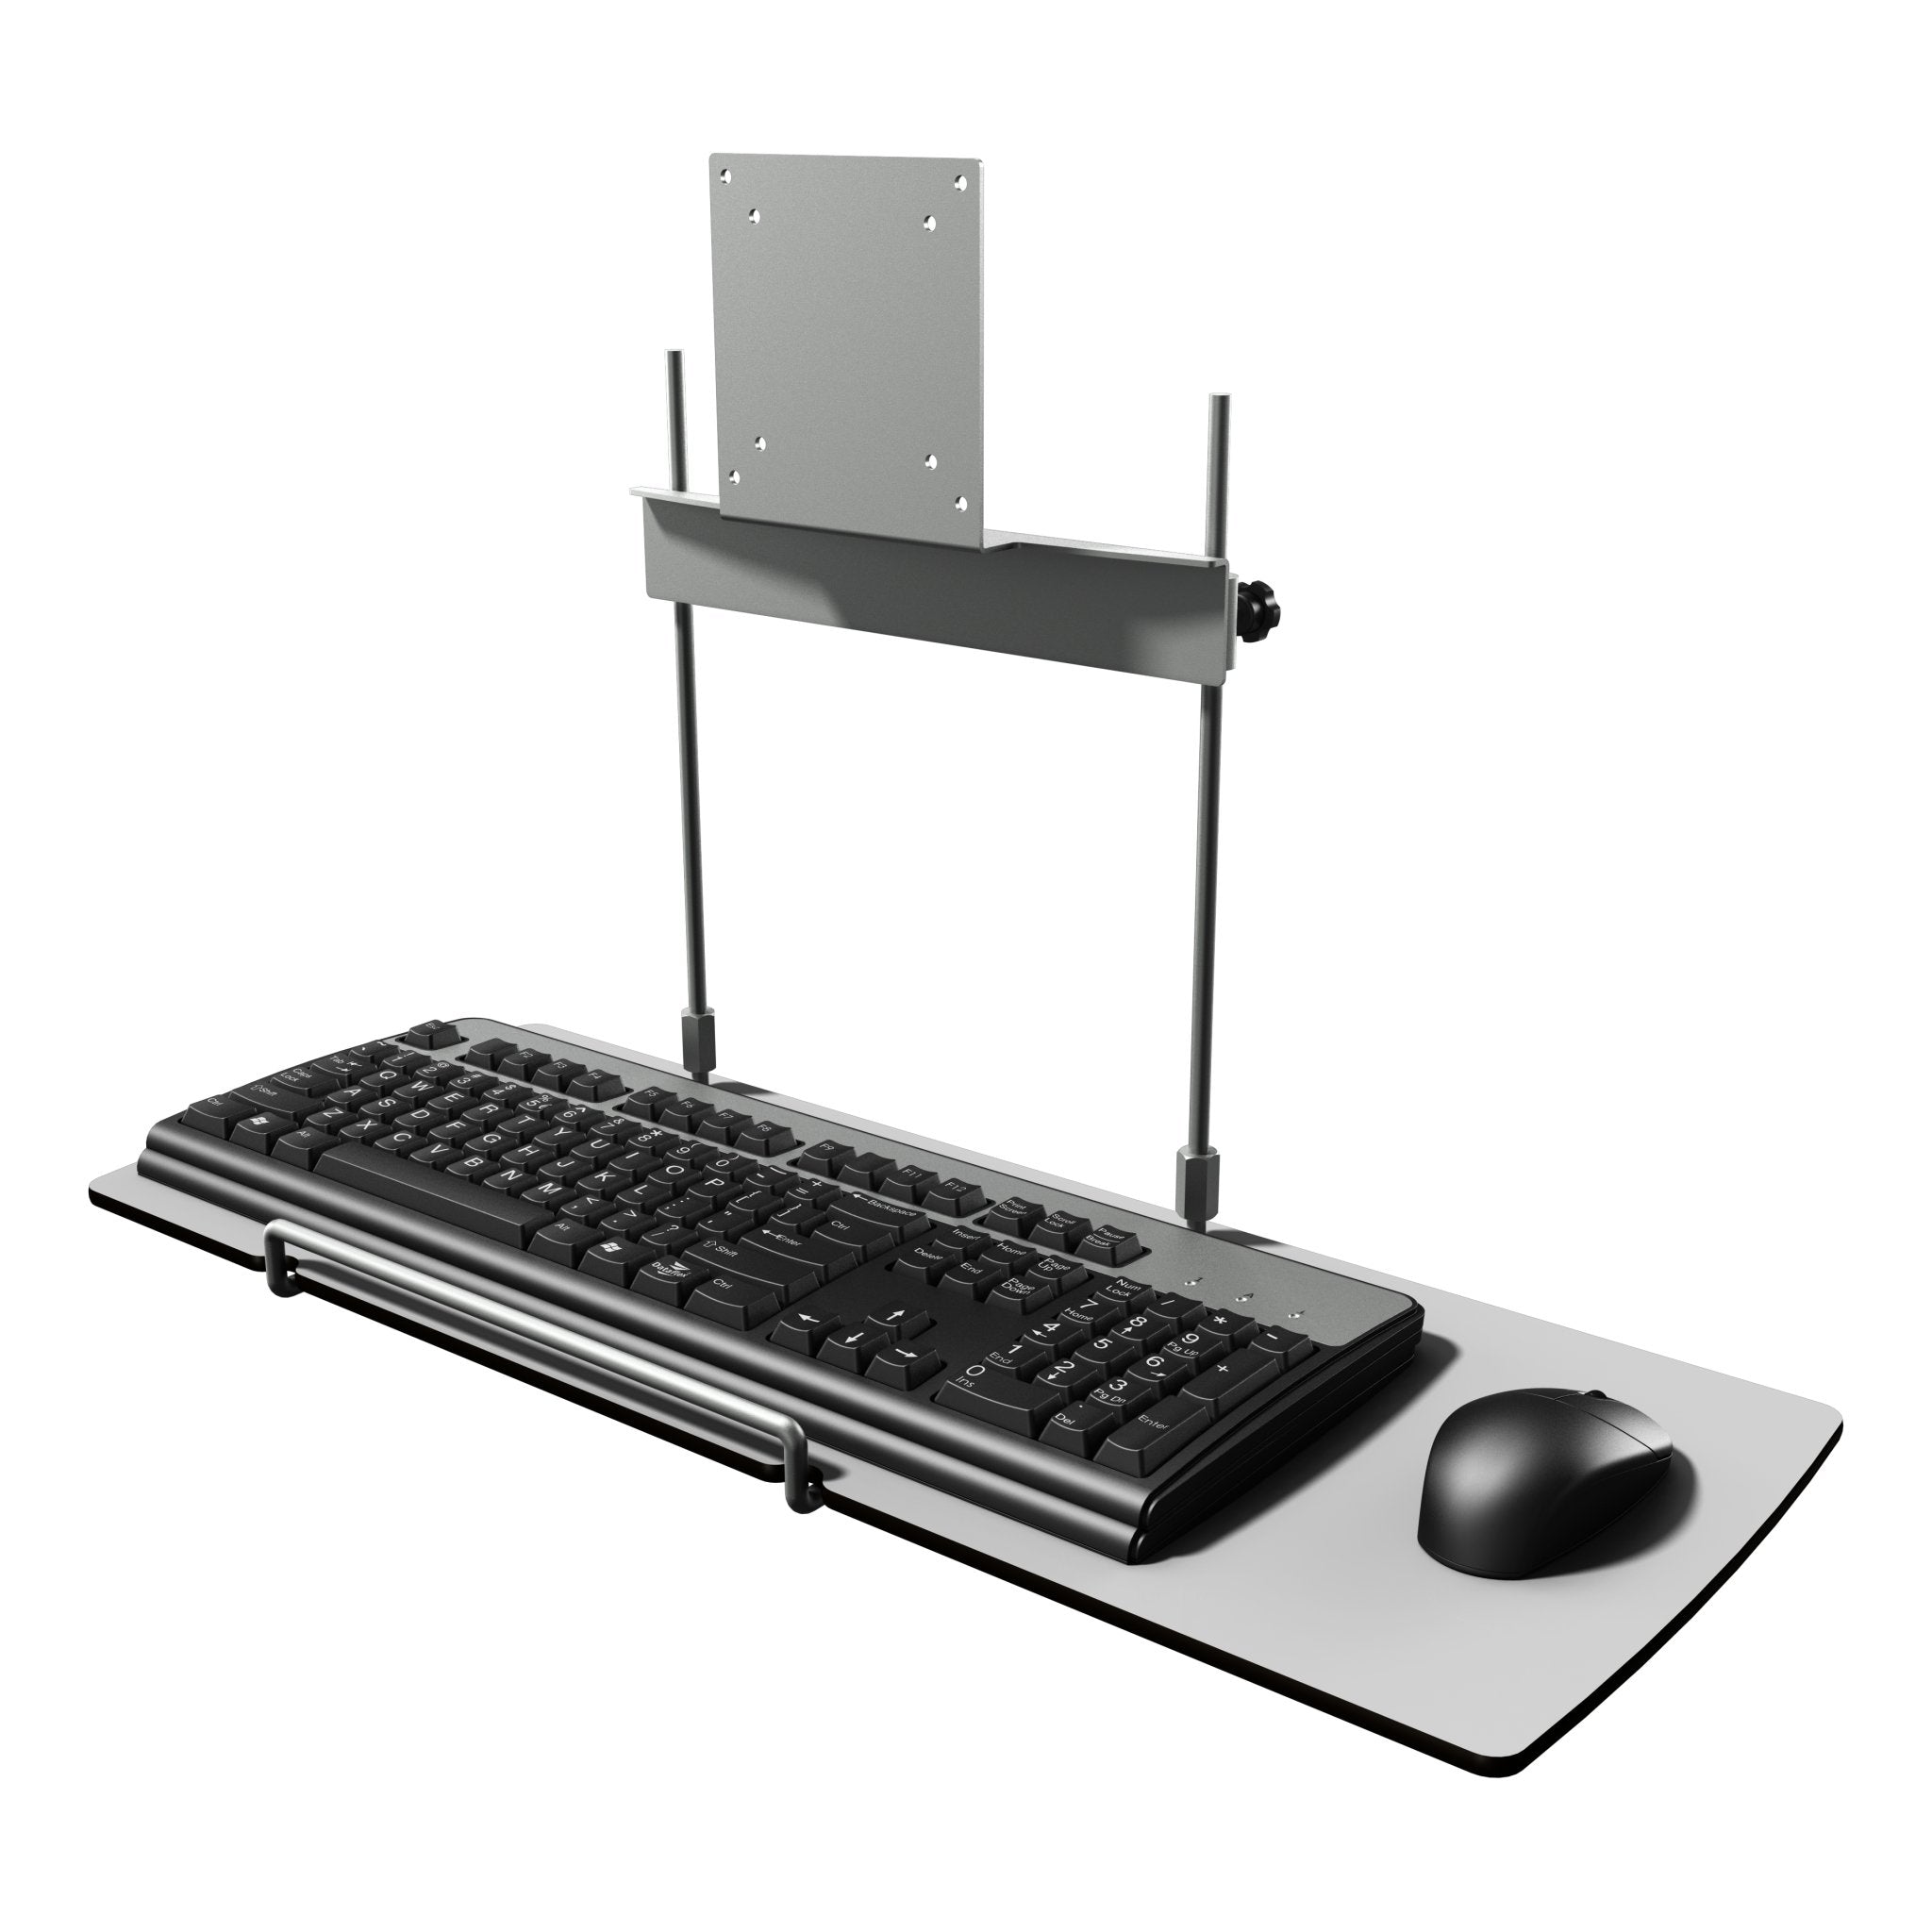 Zilver toetsenbordhouder met muisplatform uit de Viewmate collectie van Dataflex